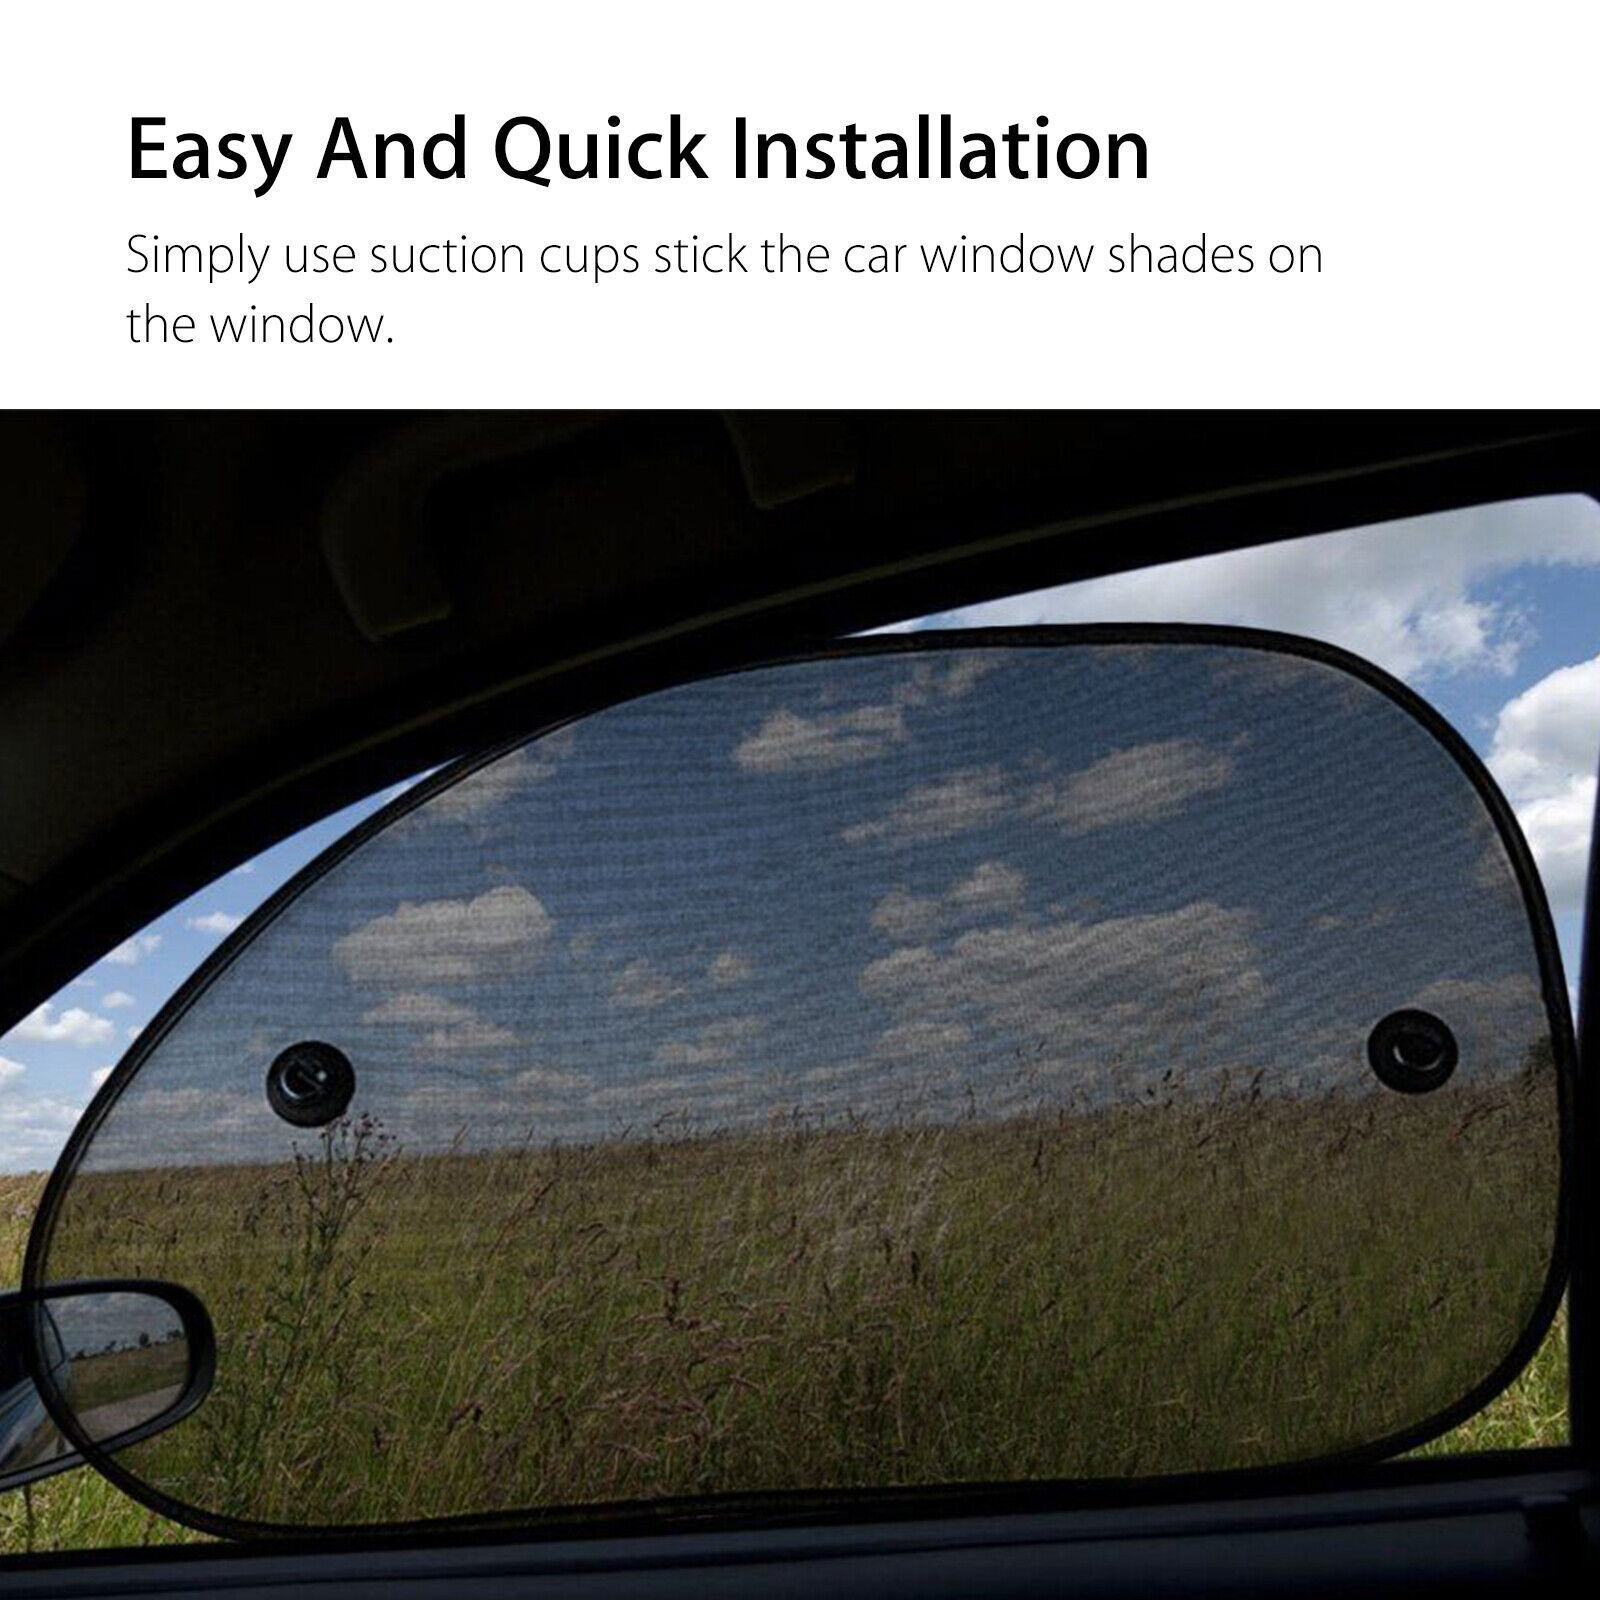 2PCS Car Side Rear Window Screen Sun Shade Mesh Cover Windshield Sunshade Visor Geartronics Sun Shade Mesh Cover - фотография #8